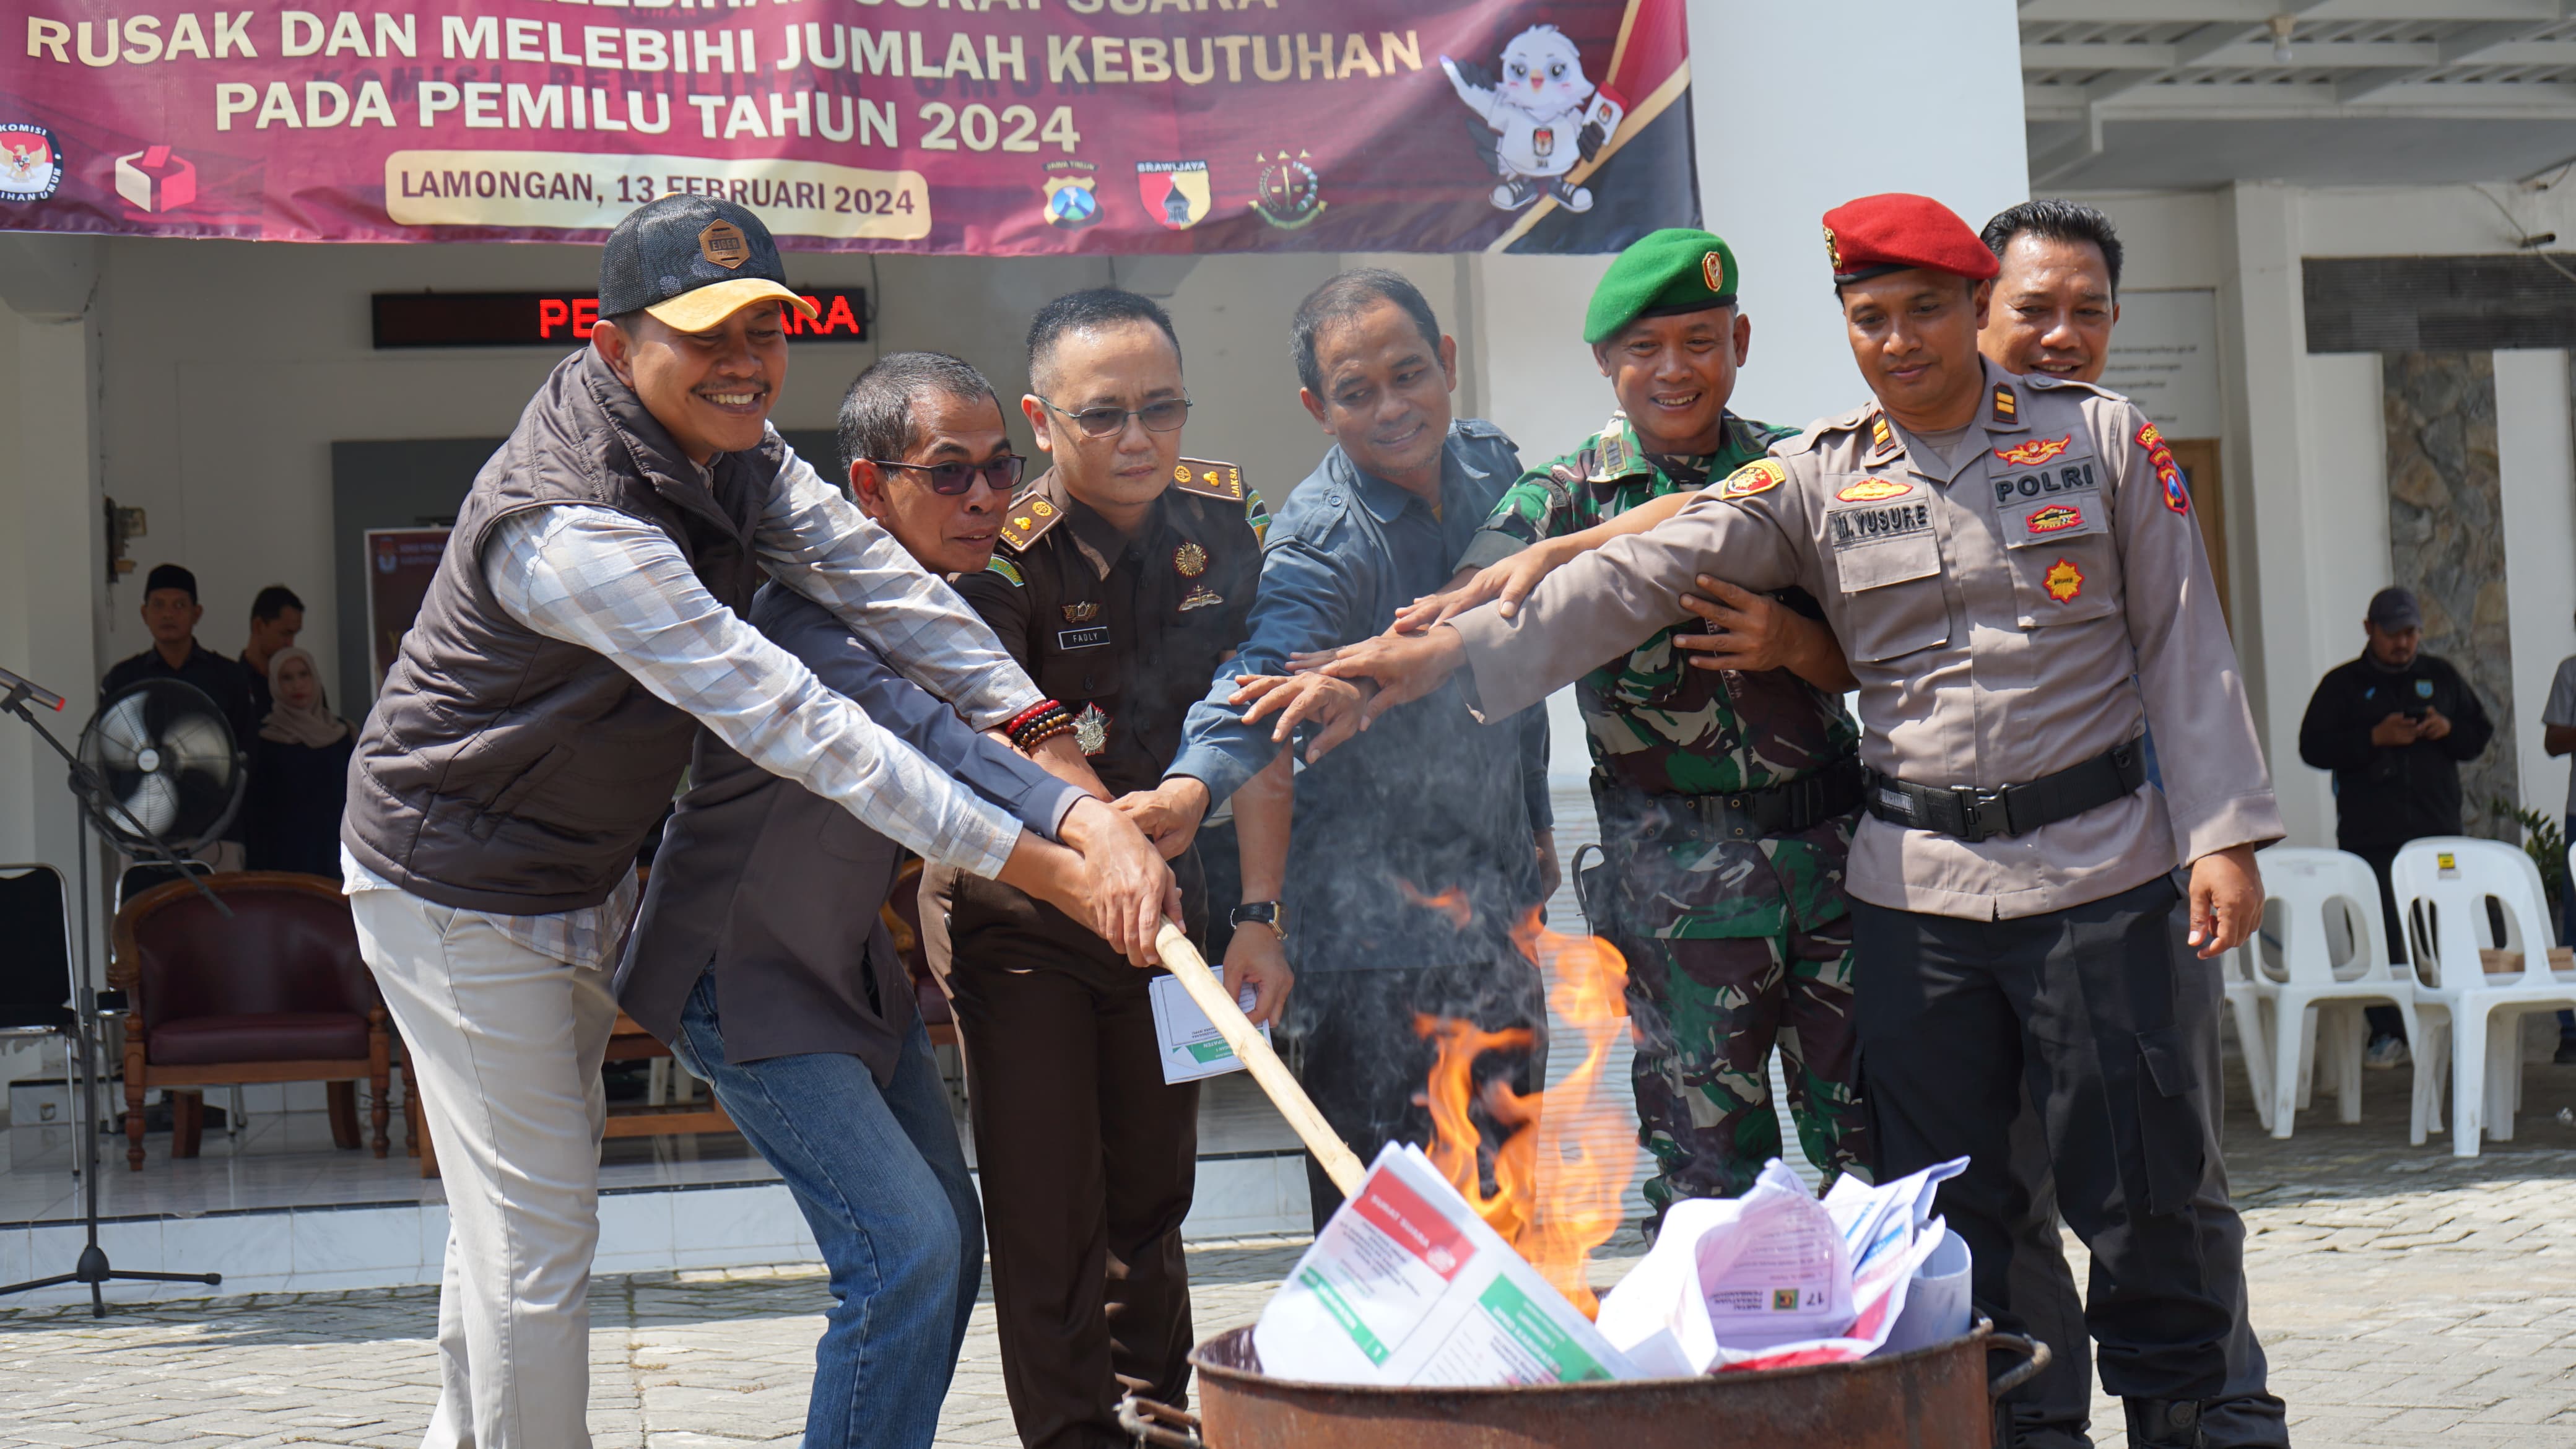 H-1 Pemilu, KPU Lamongan Membakar 1.852 Surat Suara Rusak, DPRD Provinsi Paling Banyak